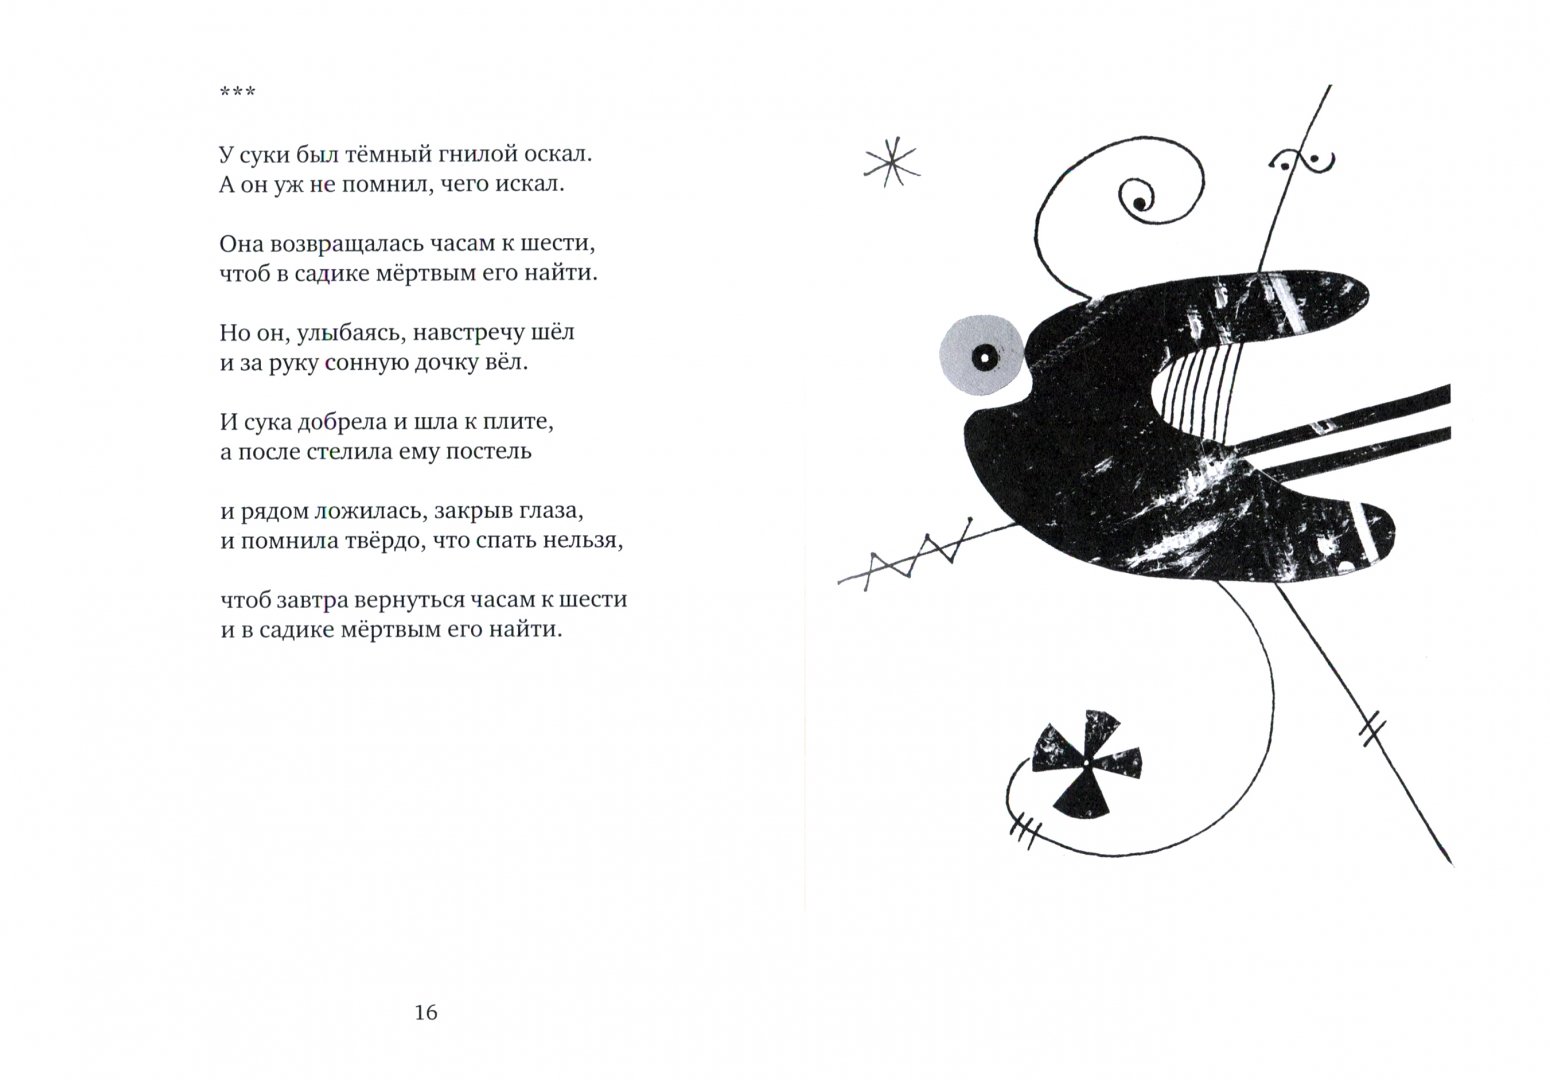 Иллюстрация 1 из 16 для Малява: Стихи о смерти и любви - Олег Завязкин | Лабиринт - книги. Источник: Лабиринт